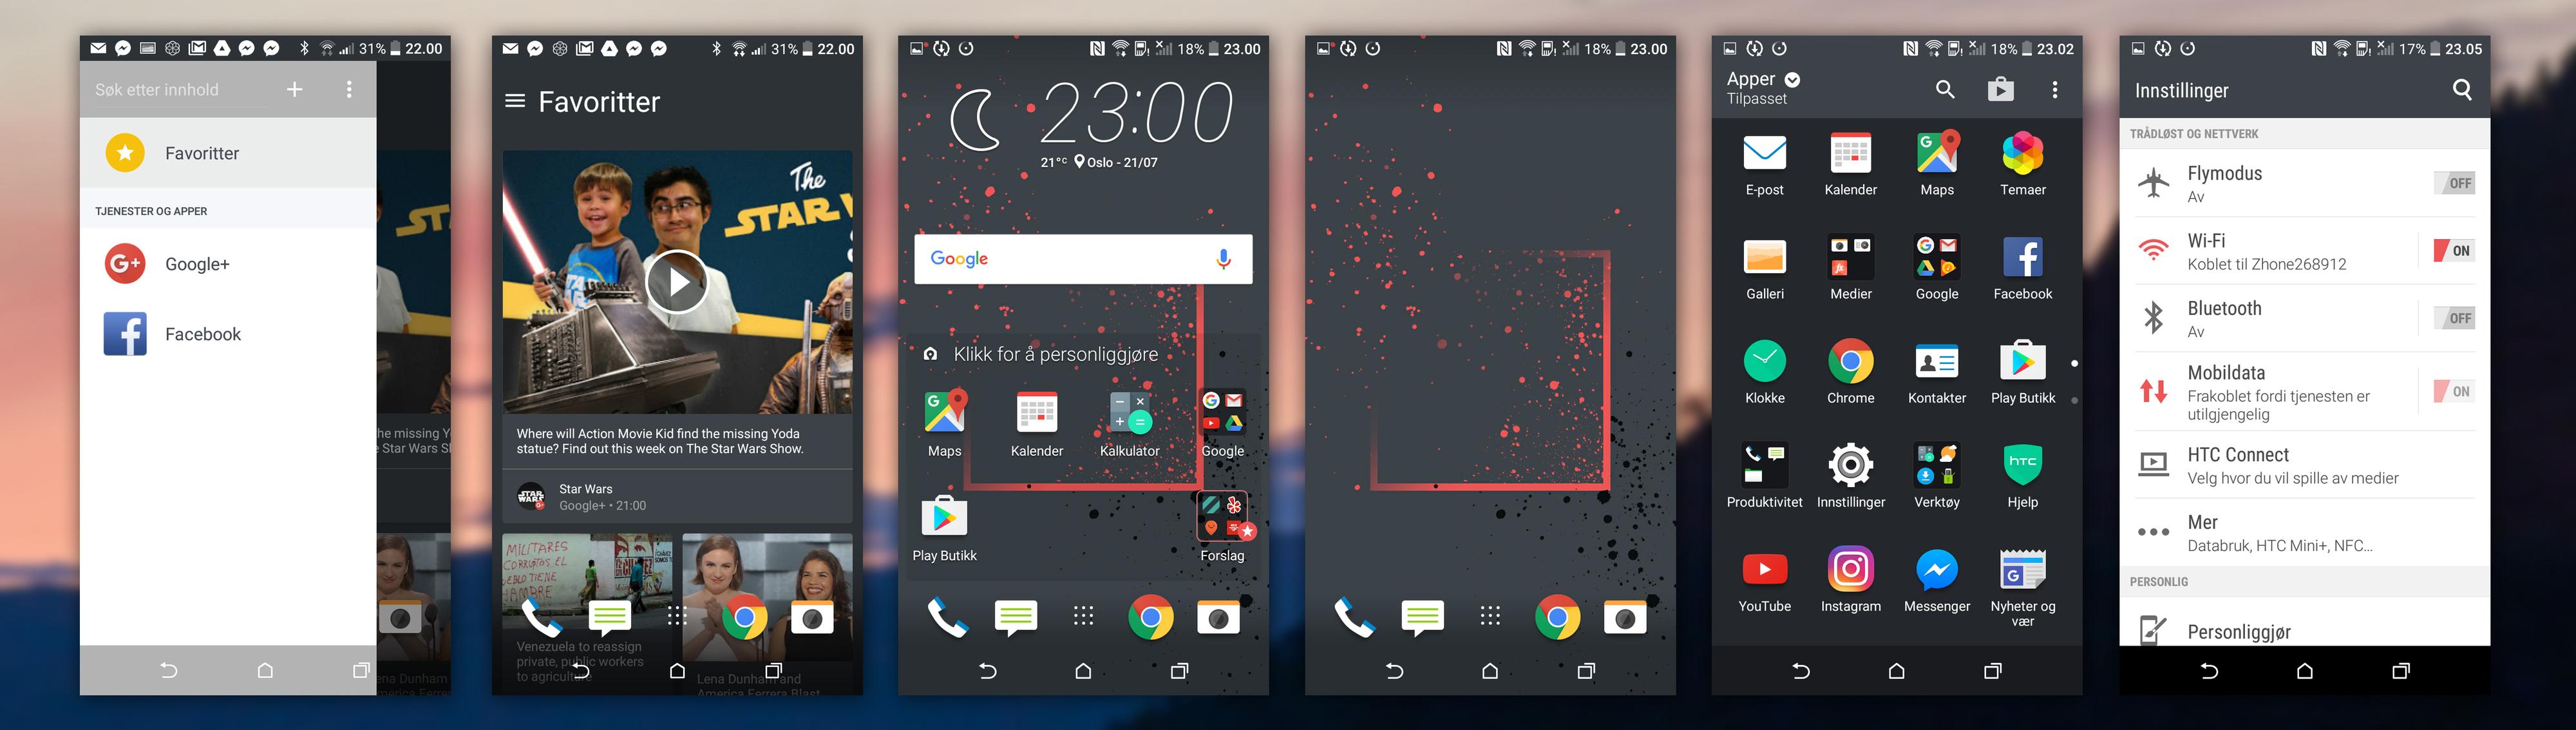 Slik ser HTC Sense-grensesnittet ut. Til venstre ser du nyhetsfeeden, til høyre innstillingene. Ved siden av sistnevnte er appmenyen.